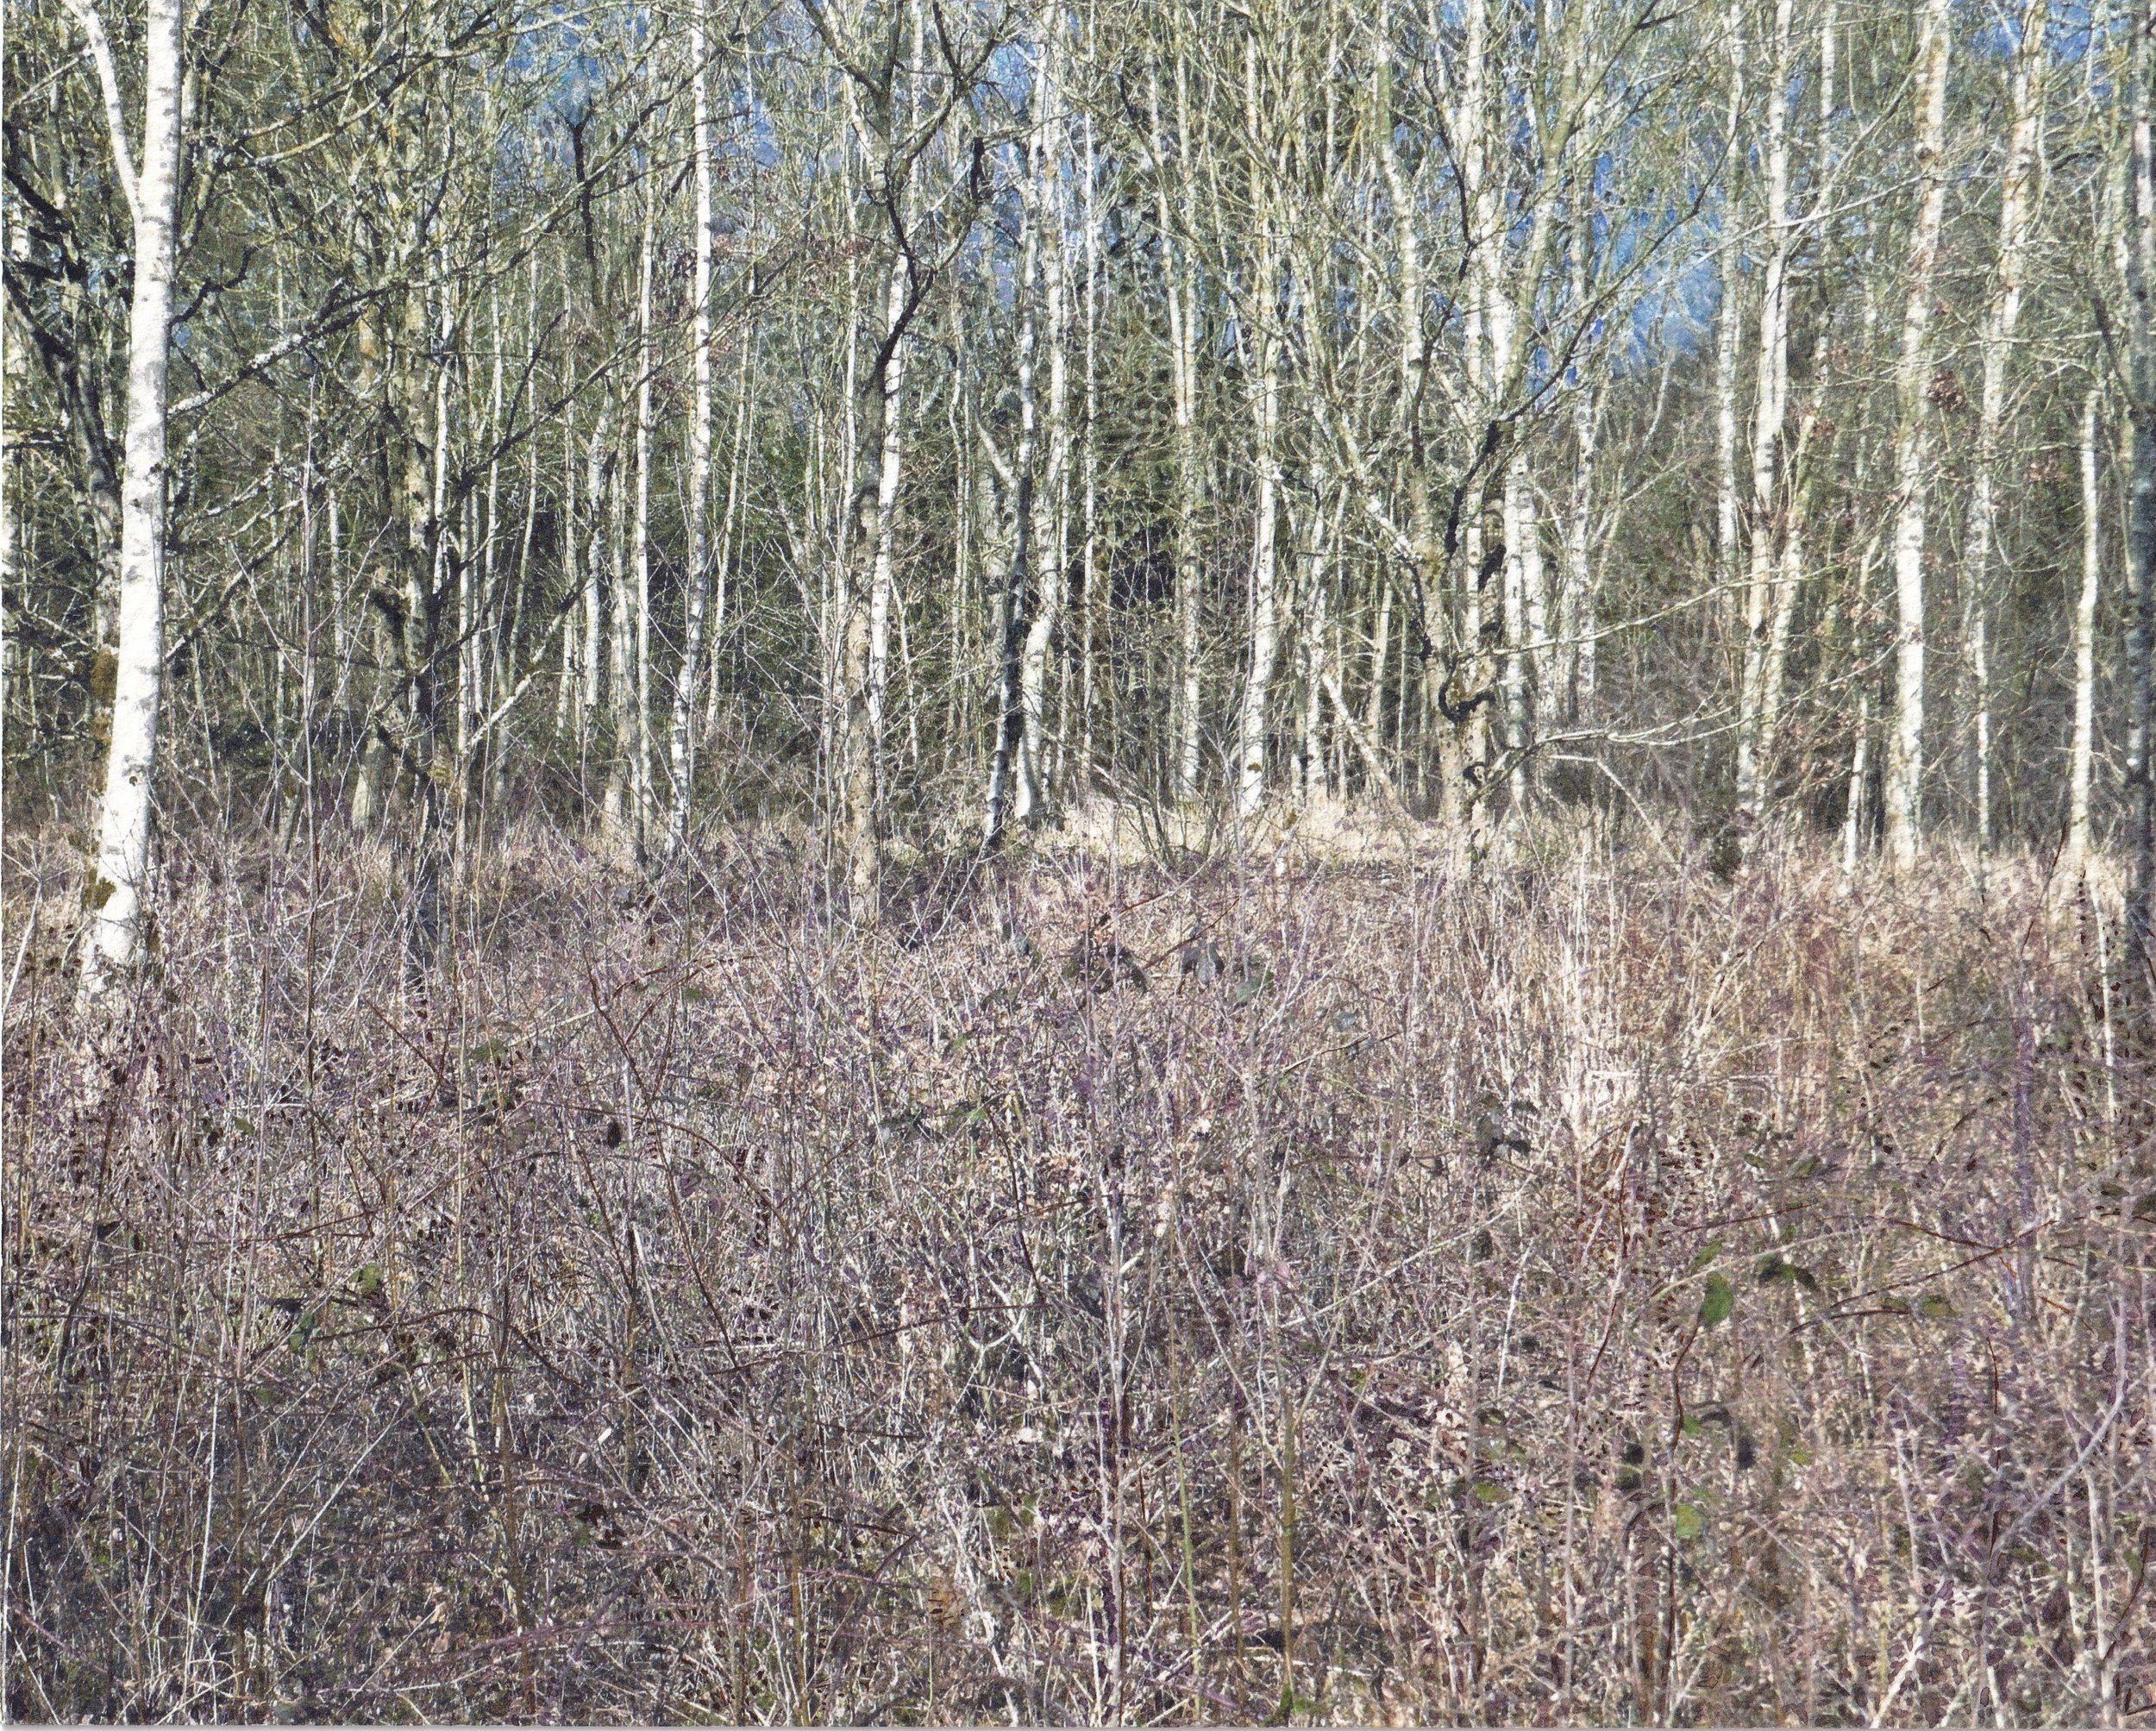 Winter Birches in the Brambles